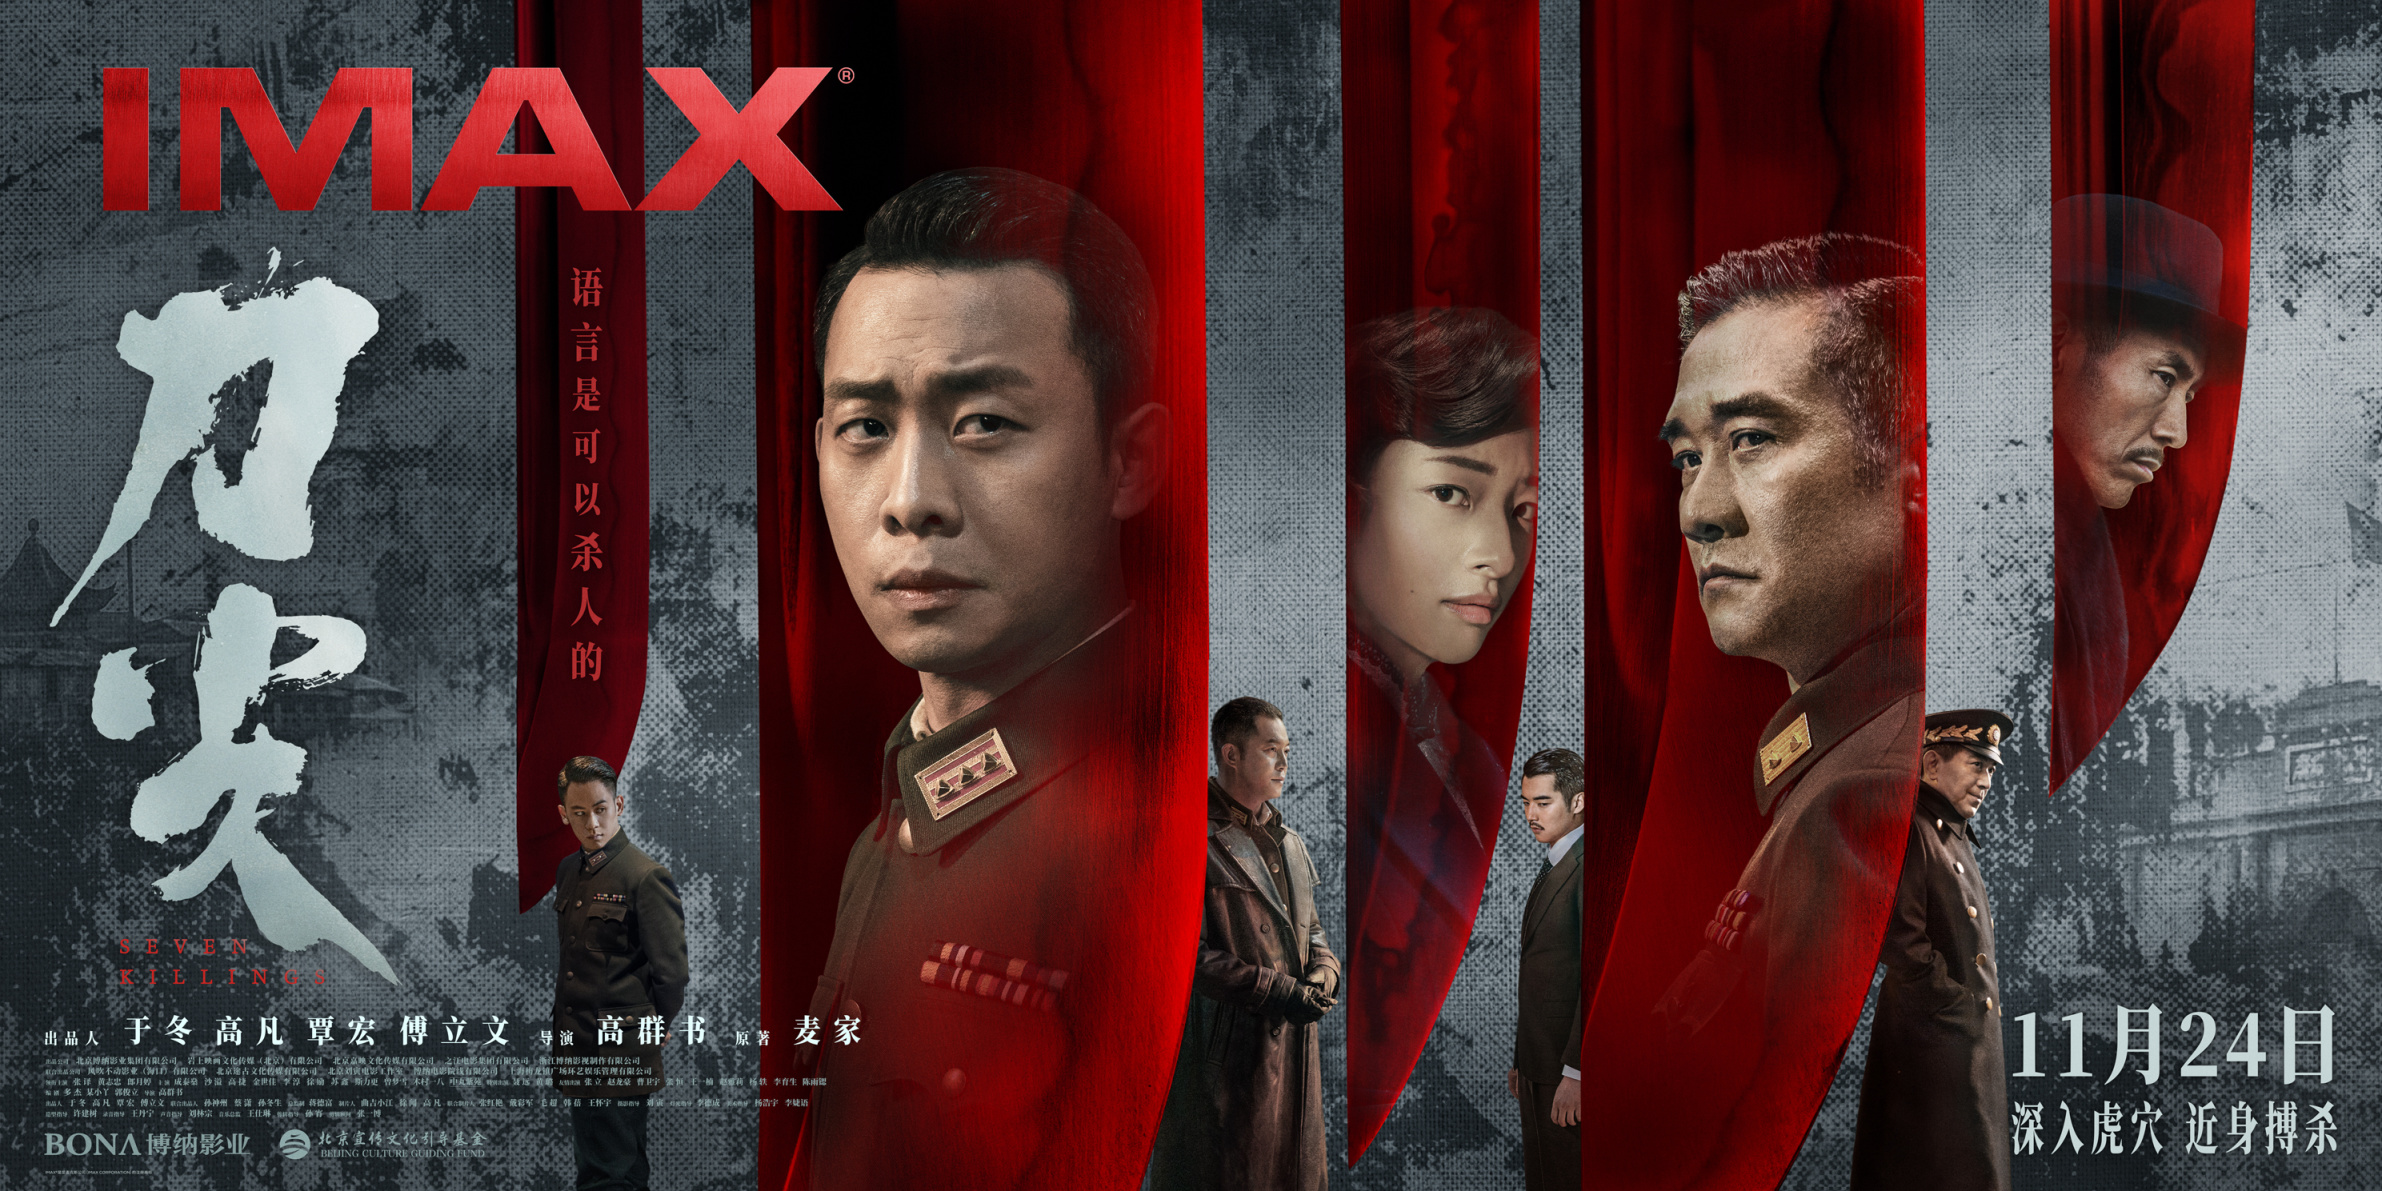 【影视动漫】谍战电影《刀尖》11月24日登陆IMAX影院-第0张